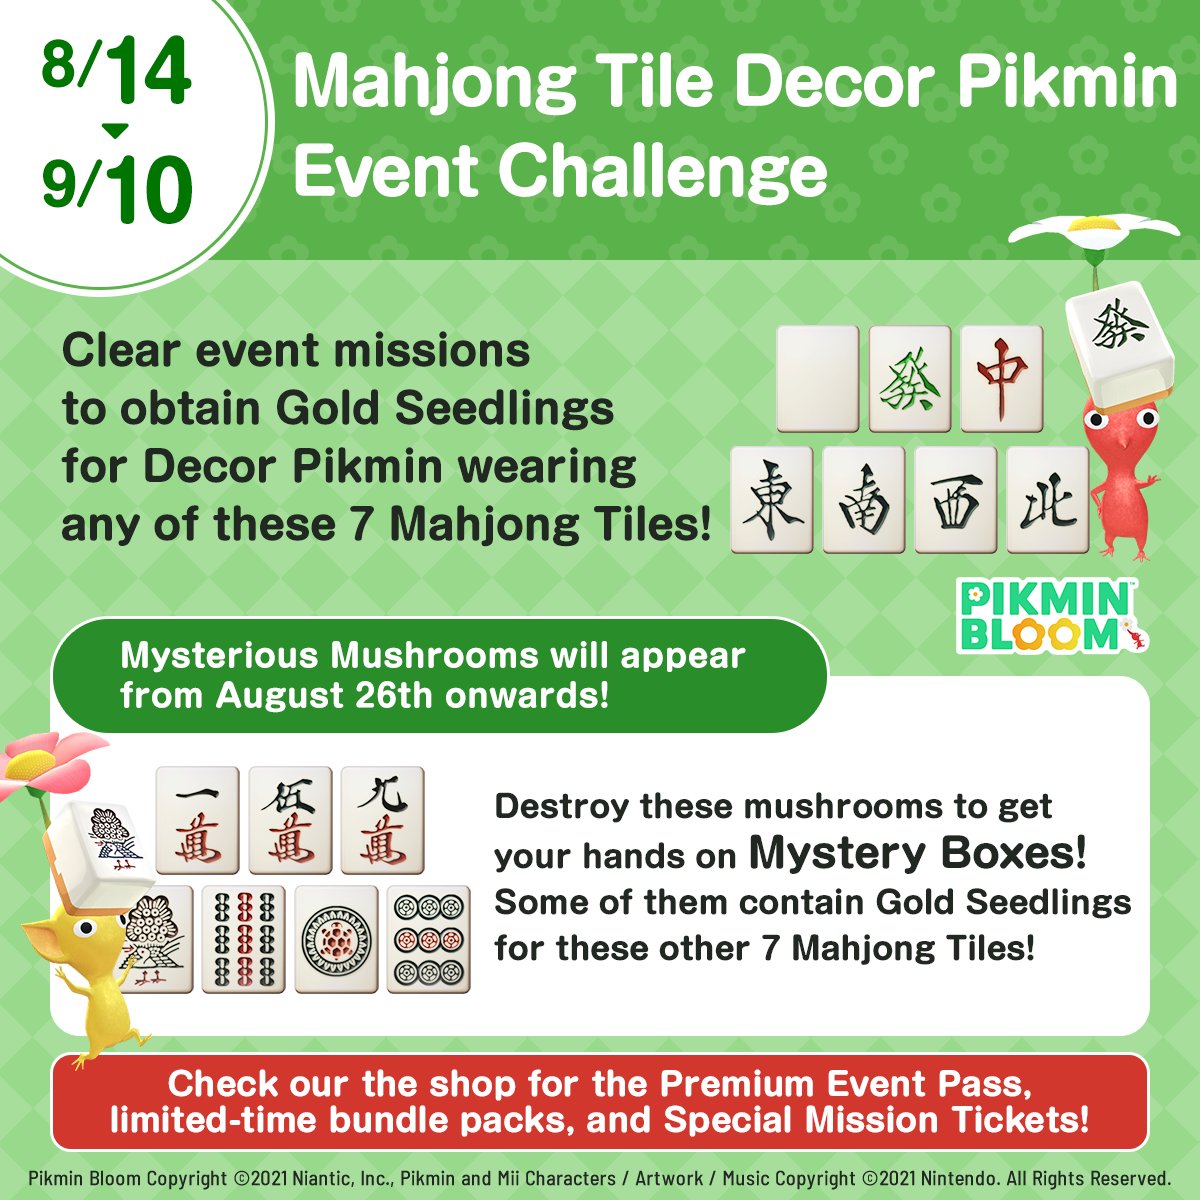 Novo desafio de evento traz os Pikmin decorados de peça de mahjong!